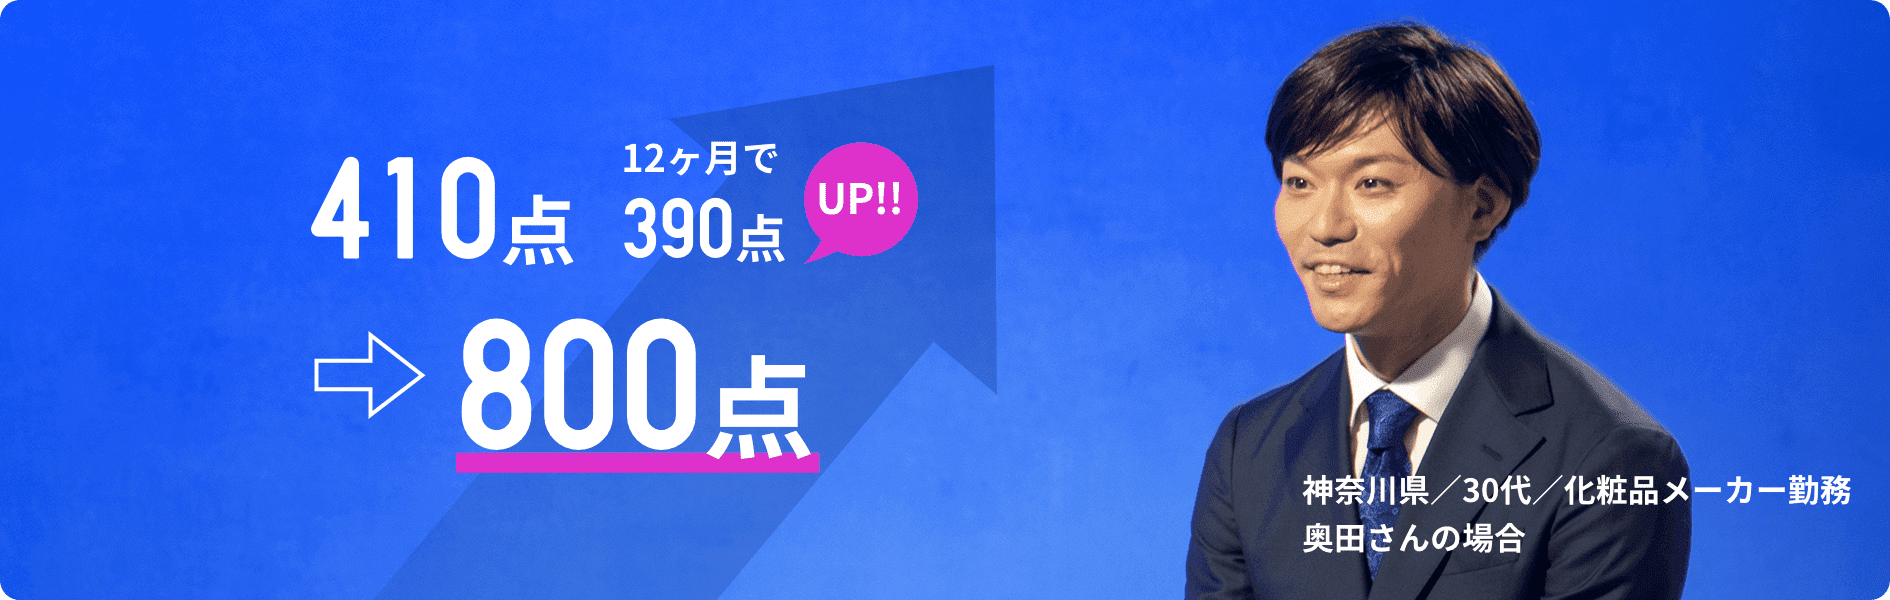 410点→800点 12ヶ月で390点UP!!! 神奈川県/30代/化粧品メーカー勤務/奥田さんの場合